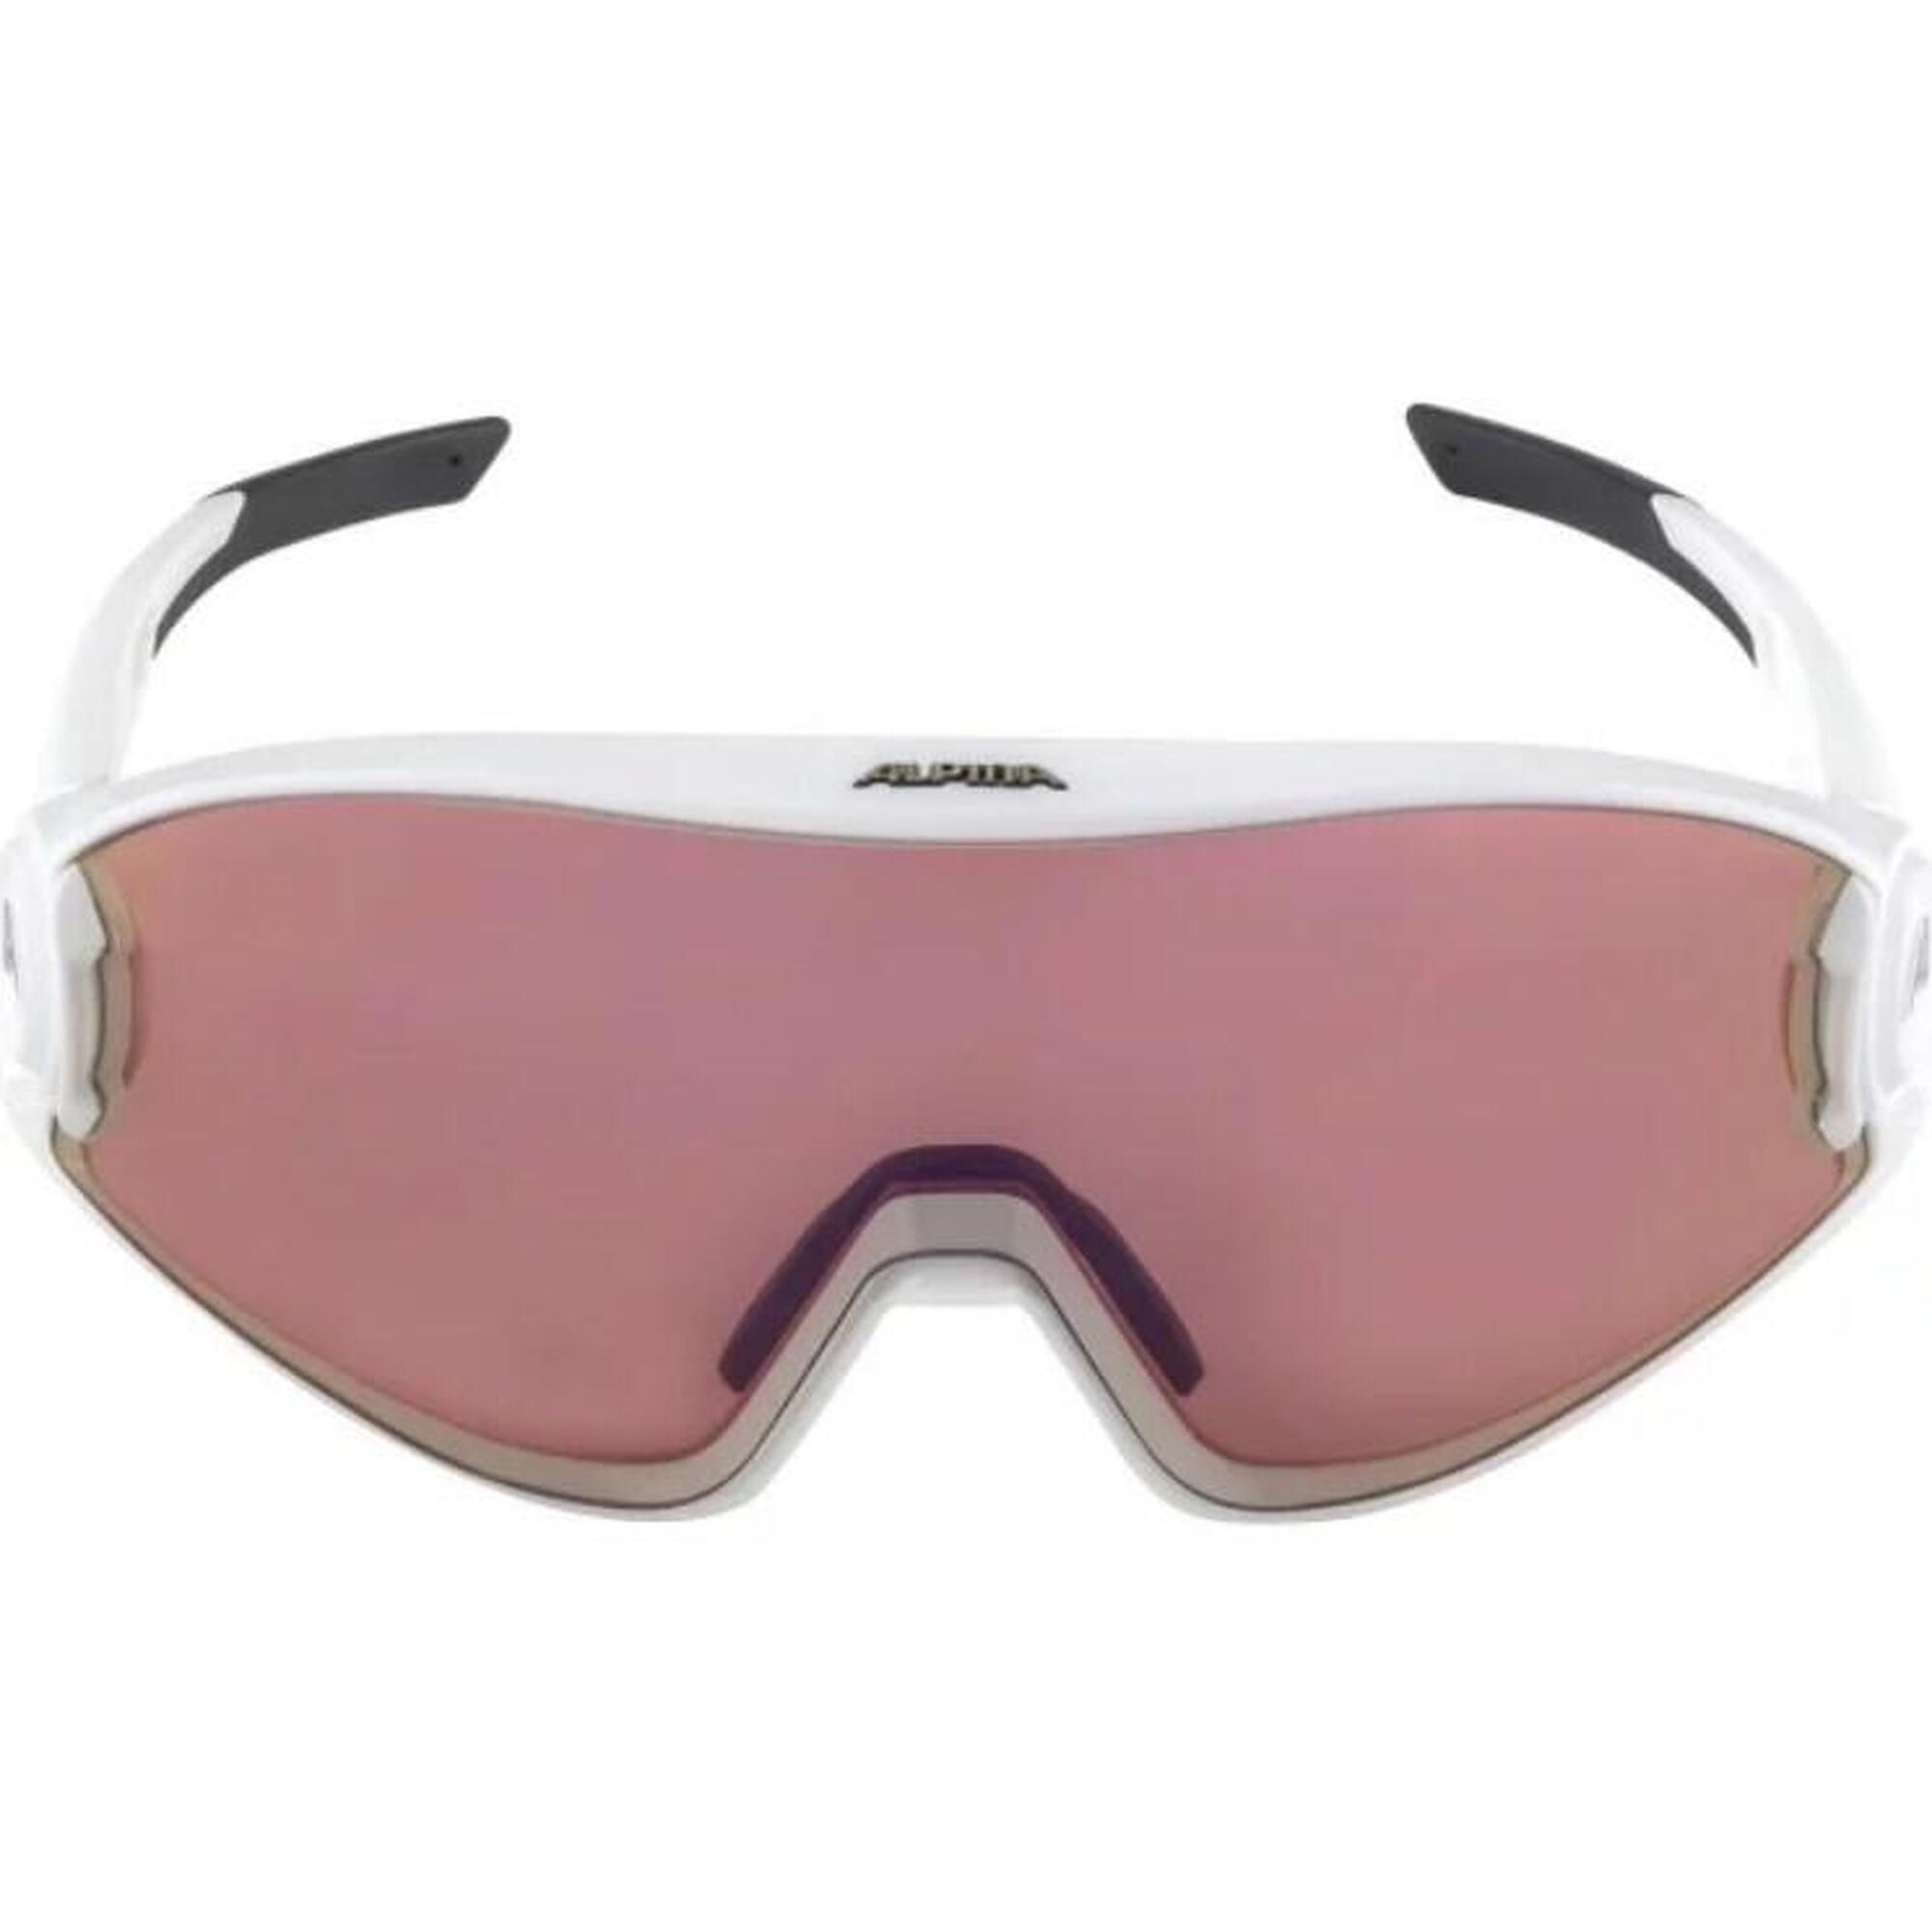 5W1NG Q+VM 成人單車運動太陽眼鏡 - 啞光白色